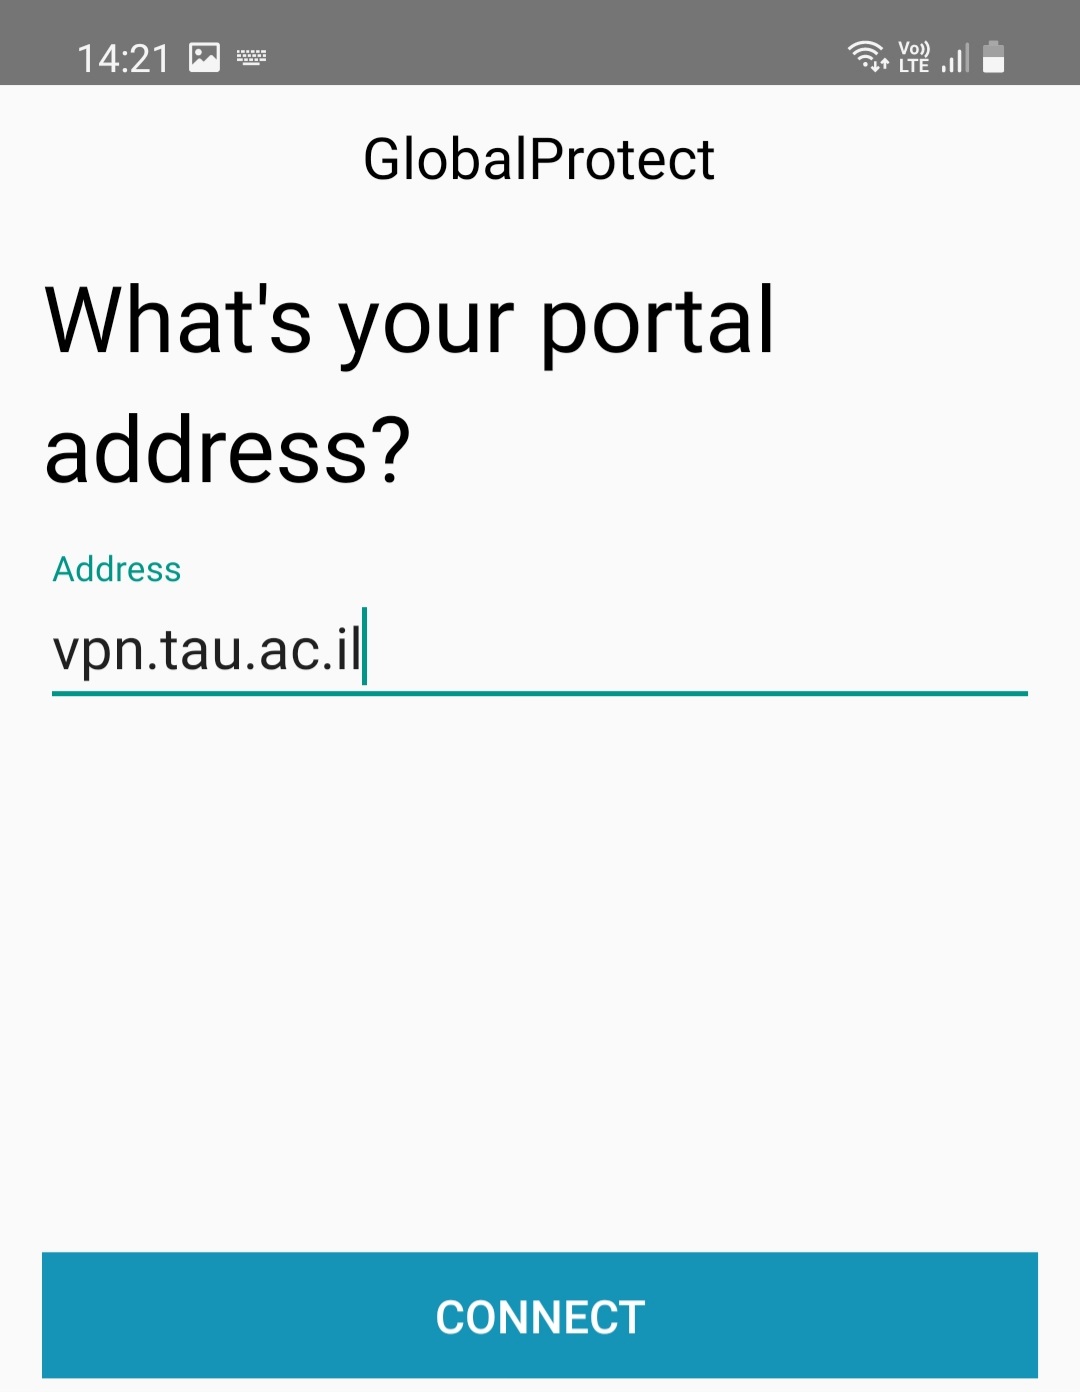 Insert the vpn address